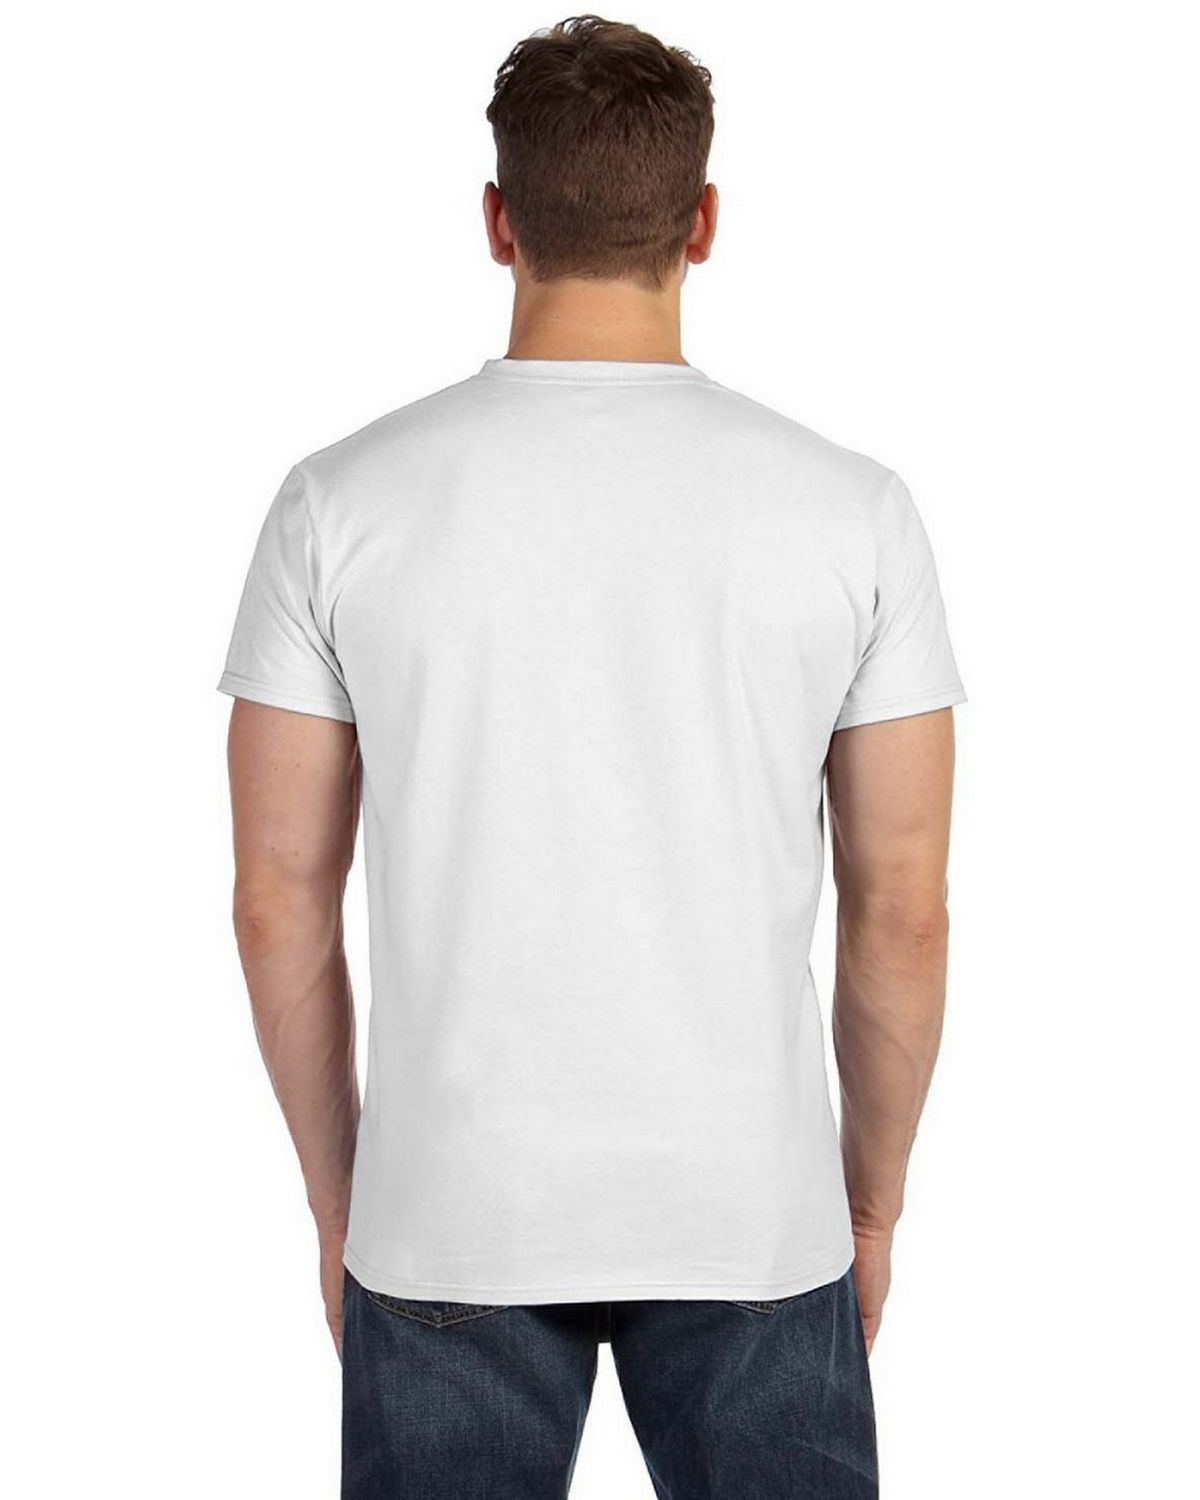 Hanes 498V 100% Ringspun Cotton V Neck T Shirt